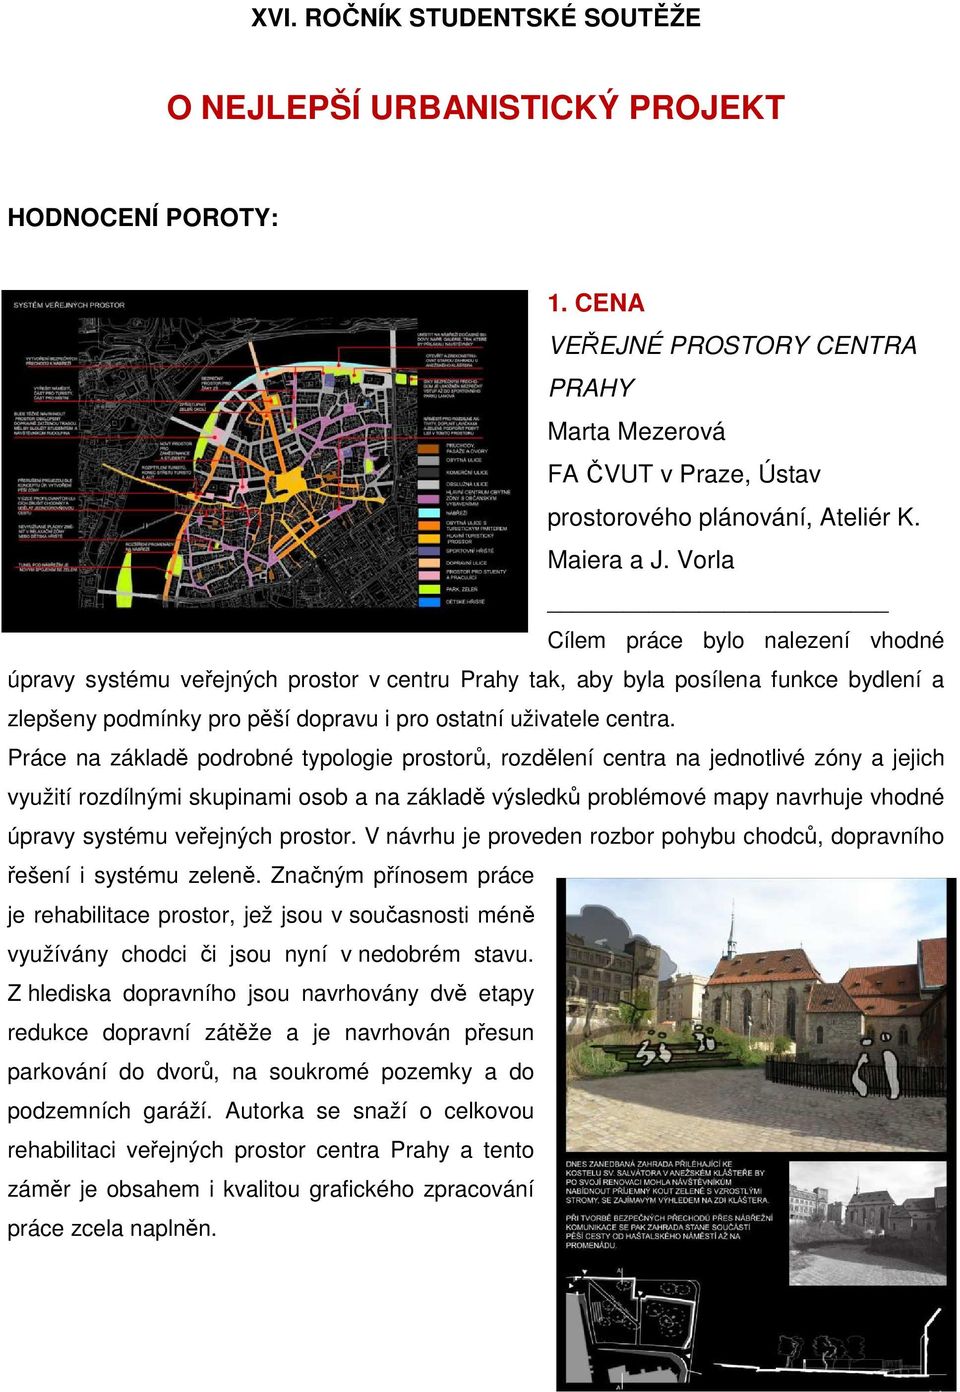 Vorla Cílem práce bylo nalezení vhodné úpravy systému veřejných prostor v centru Prahy tak, aby byla posílena funkce bydlení a zlepšeny podmínky pro pěší dopravu i pro ostatní uživatele centra.